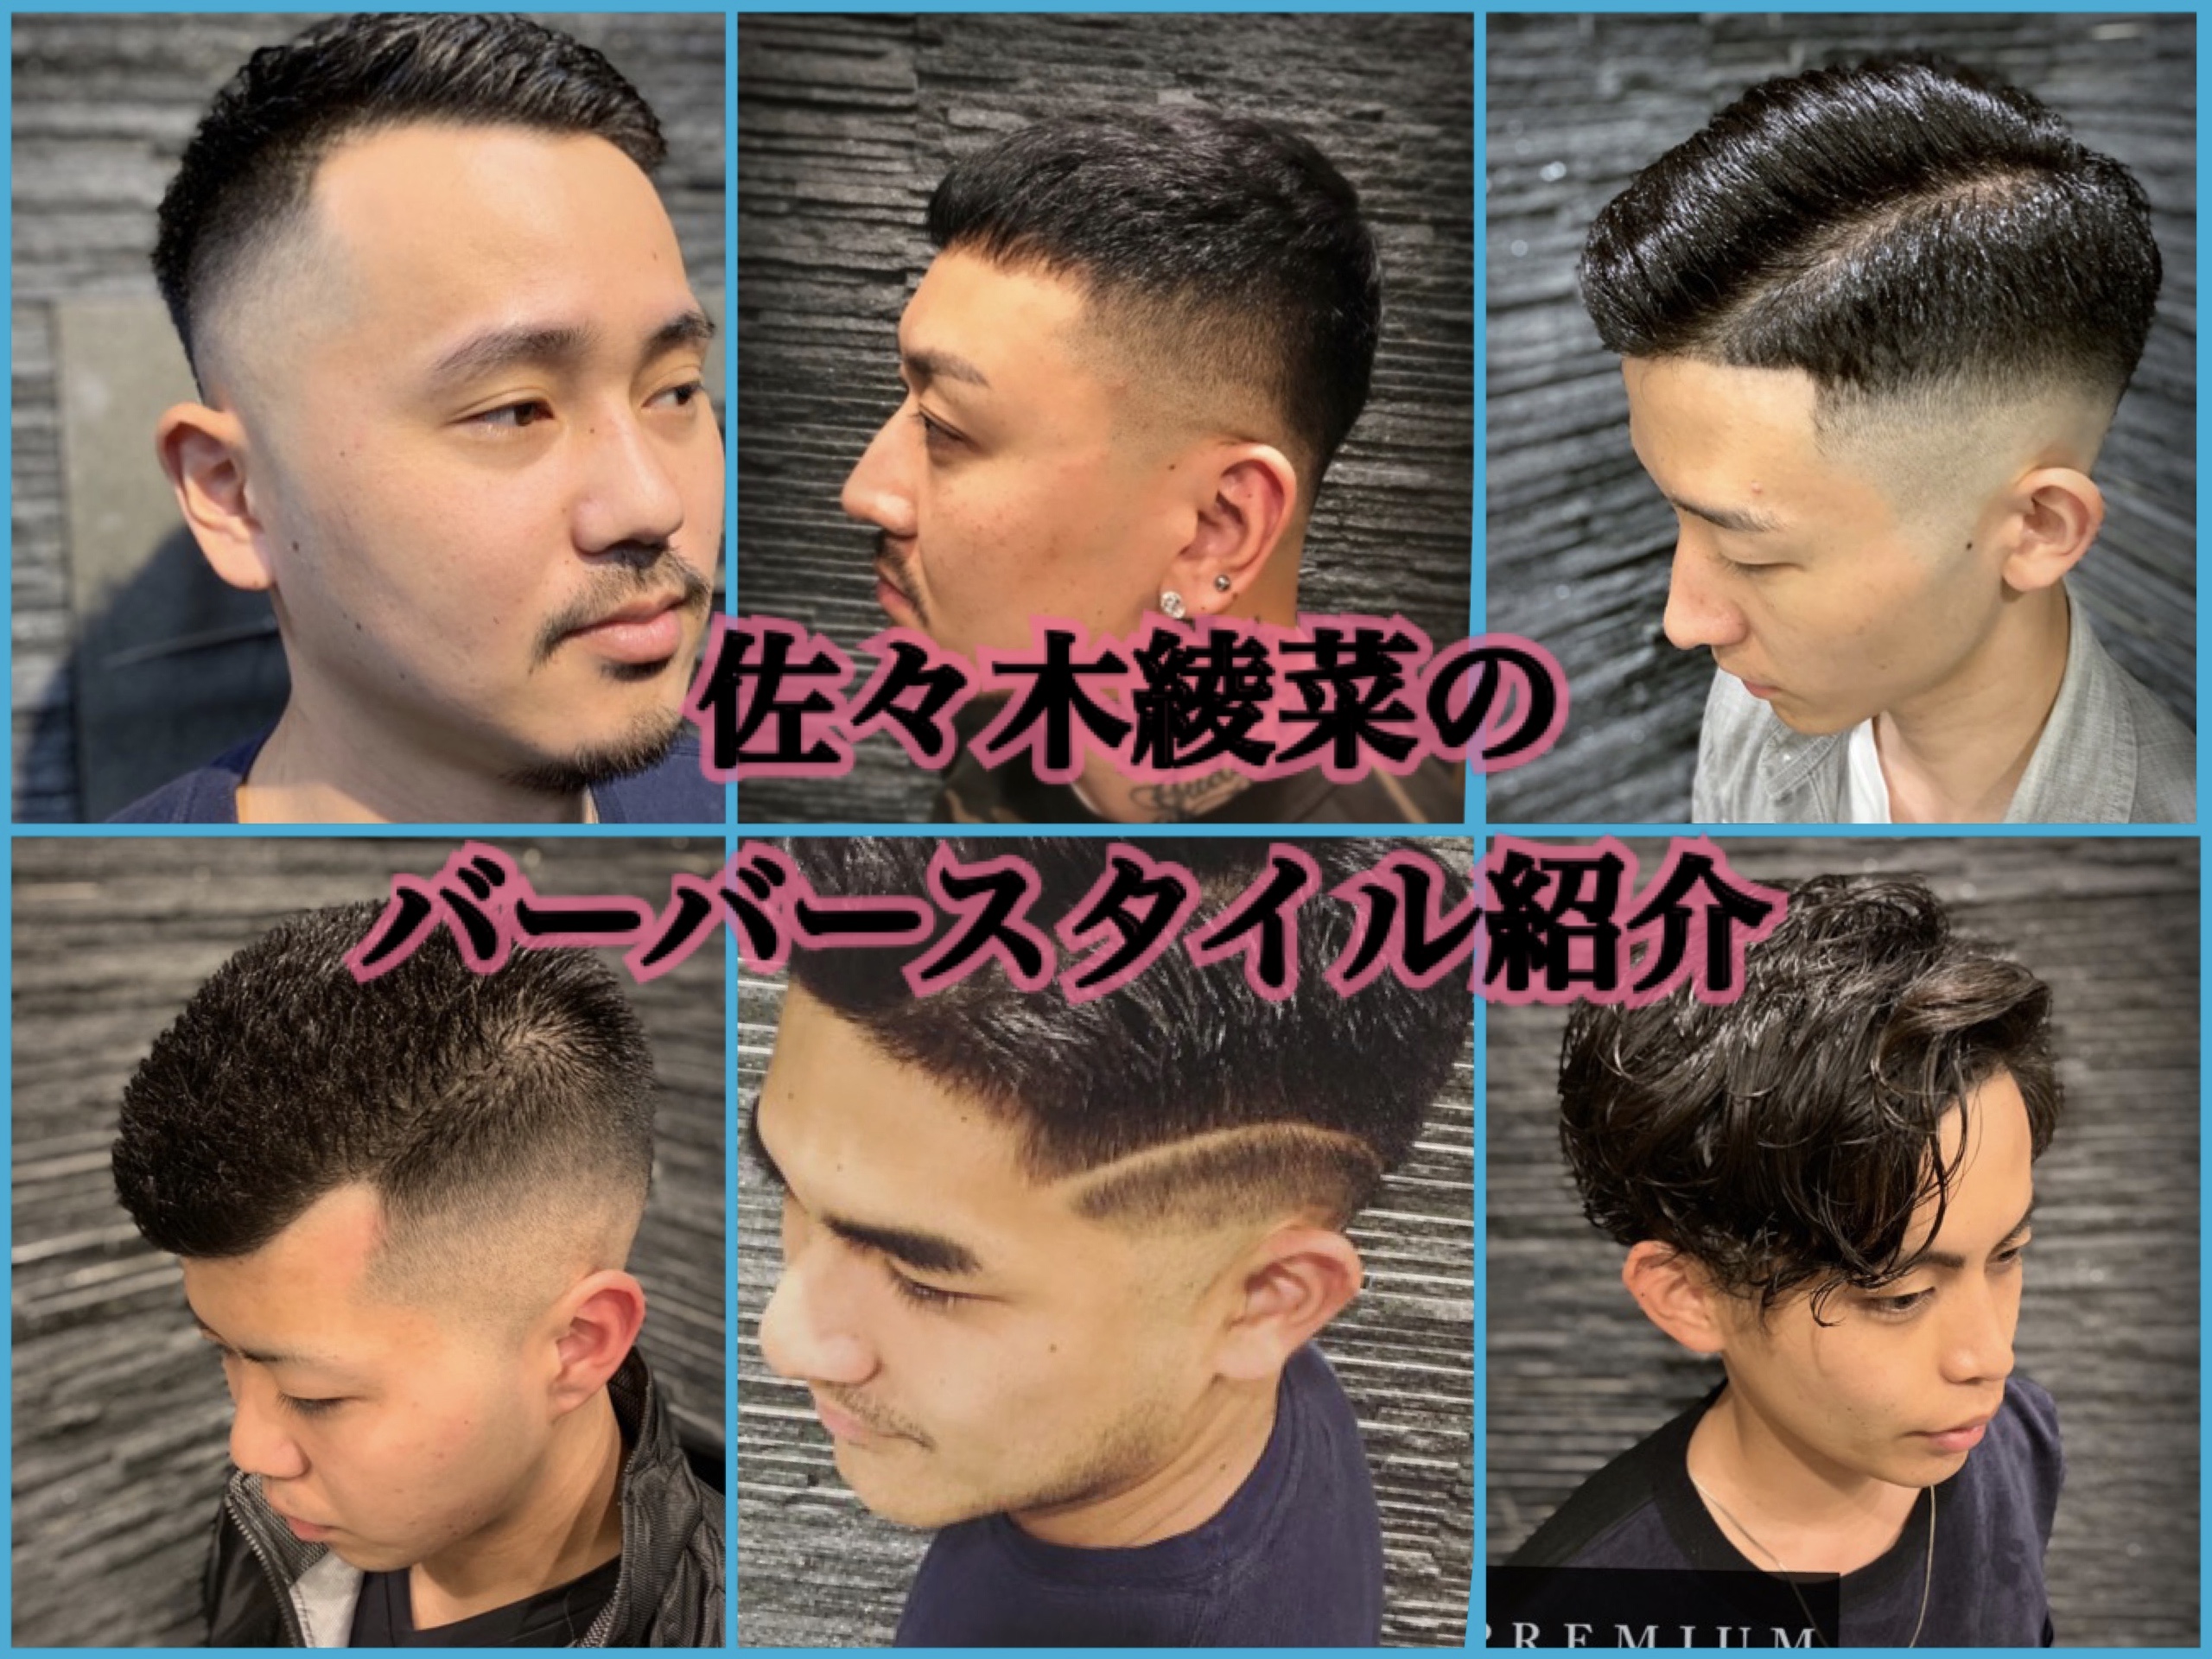 パーマオンロングヘアー ブログ 渋谷原宿店 高級理容室 床屋 ヘアサロン Premium Barber プレミアムバーバー